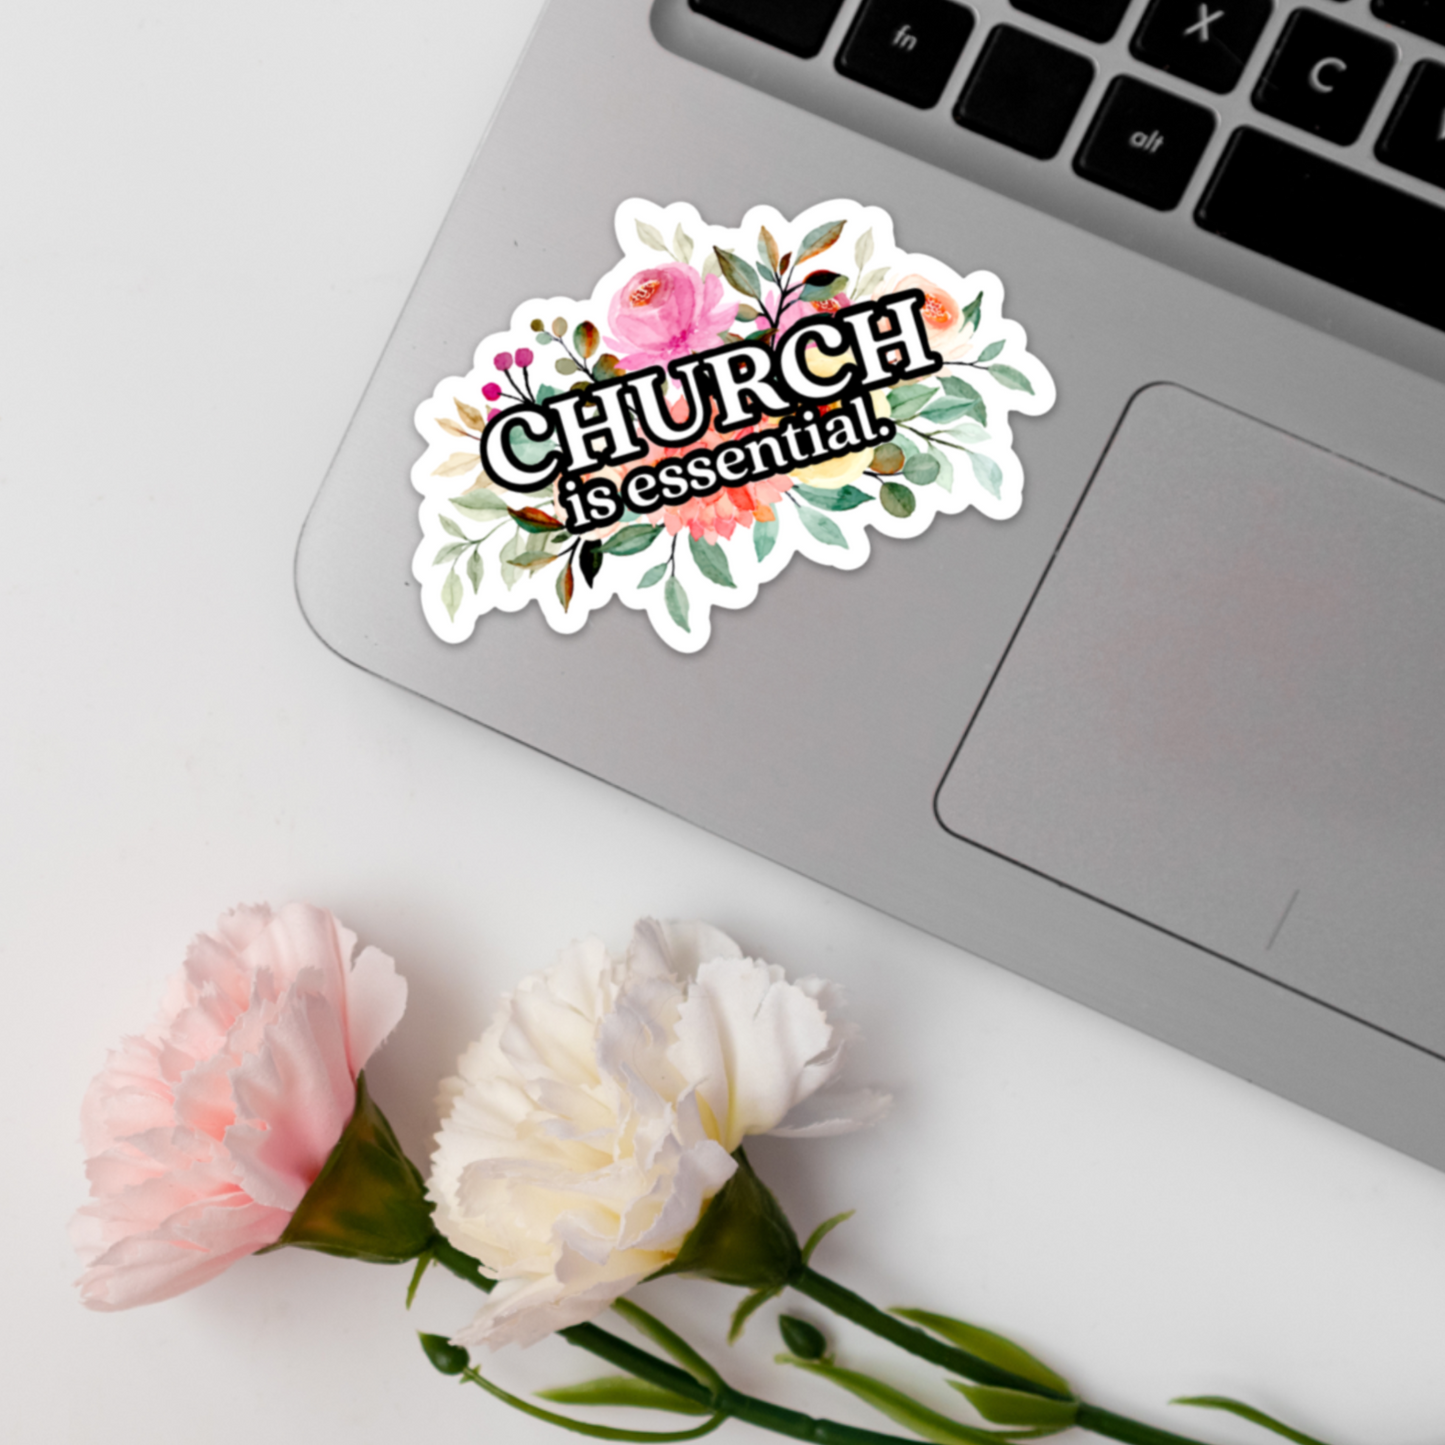 Church is essential. | Vinyl Sticker